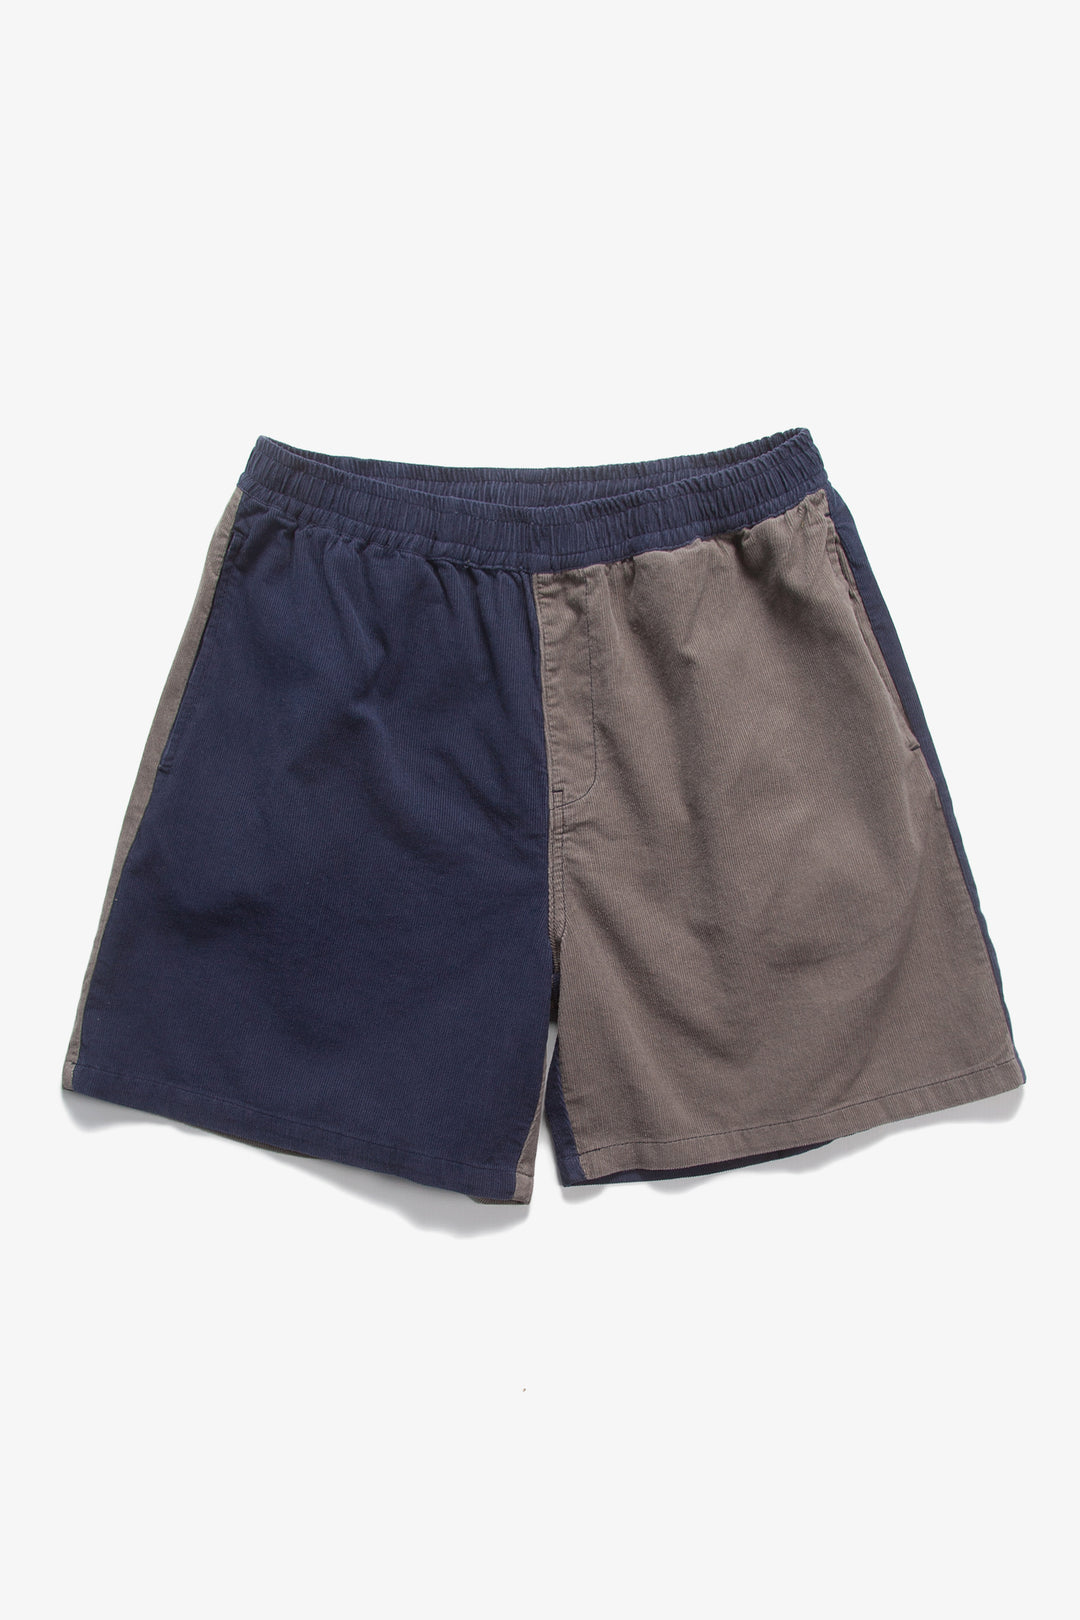 Blacksmith - Corduroy Easy Shorts - Navy/Grey